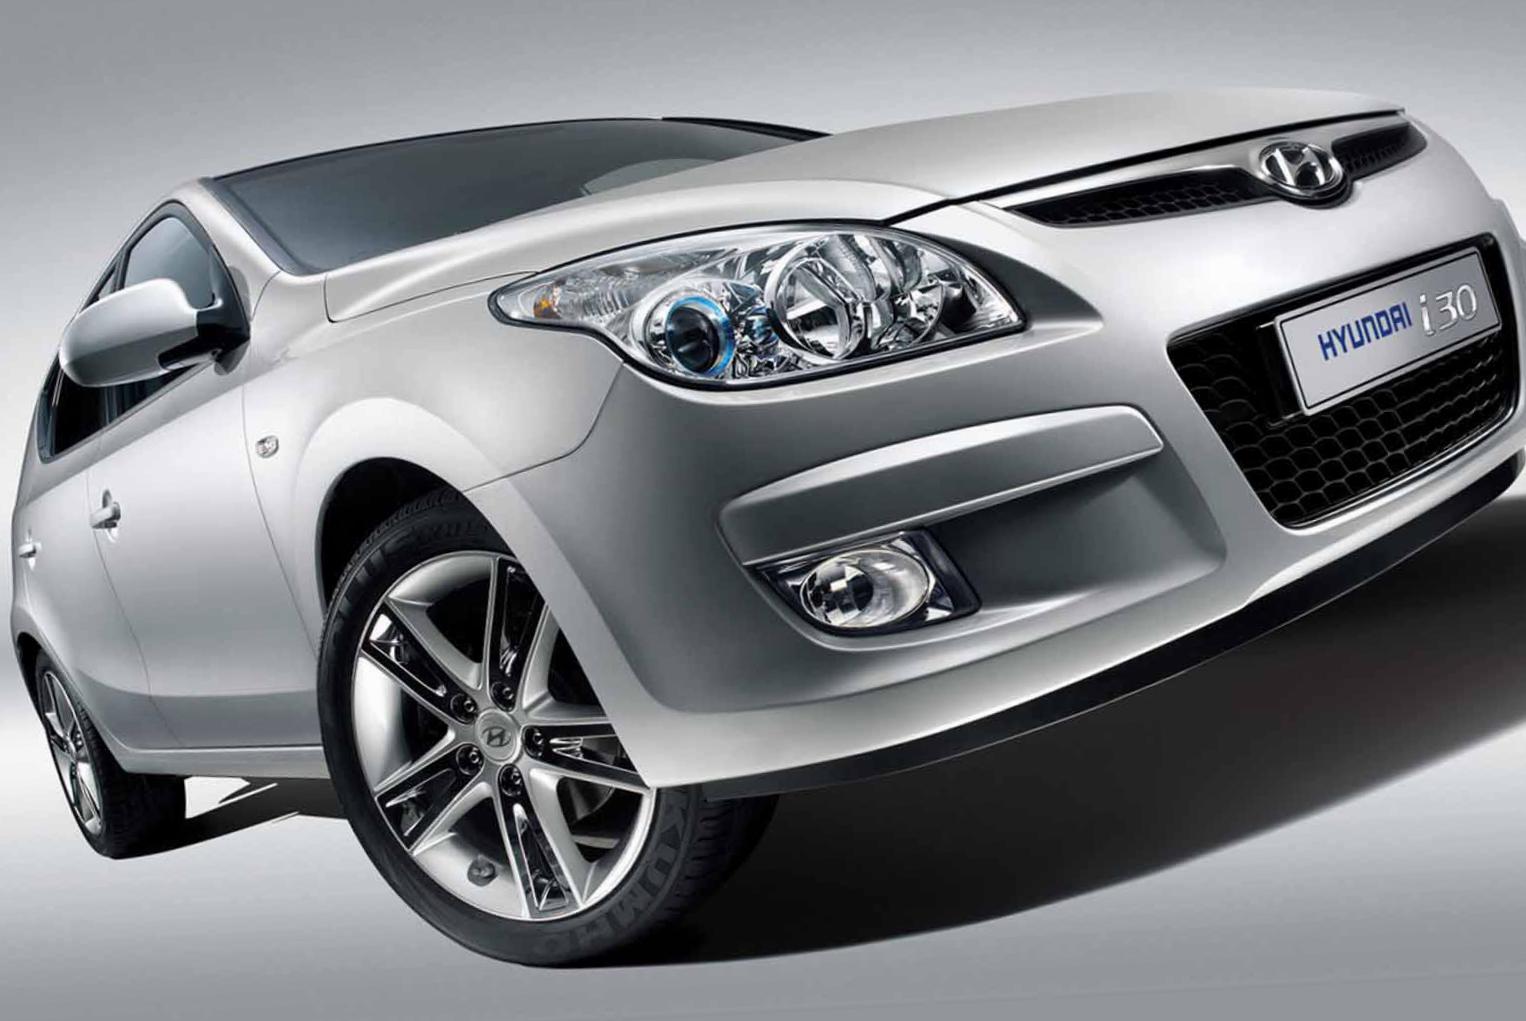 i30 Hyundai Specifications 2011